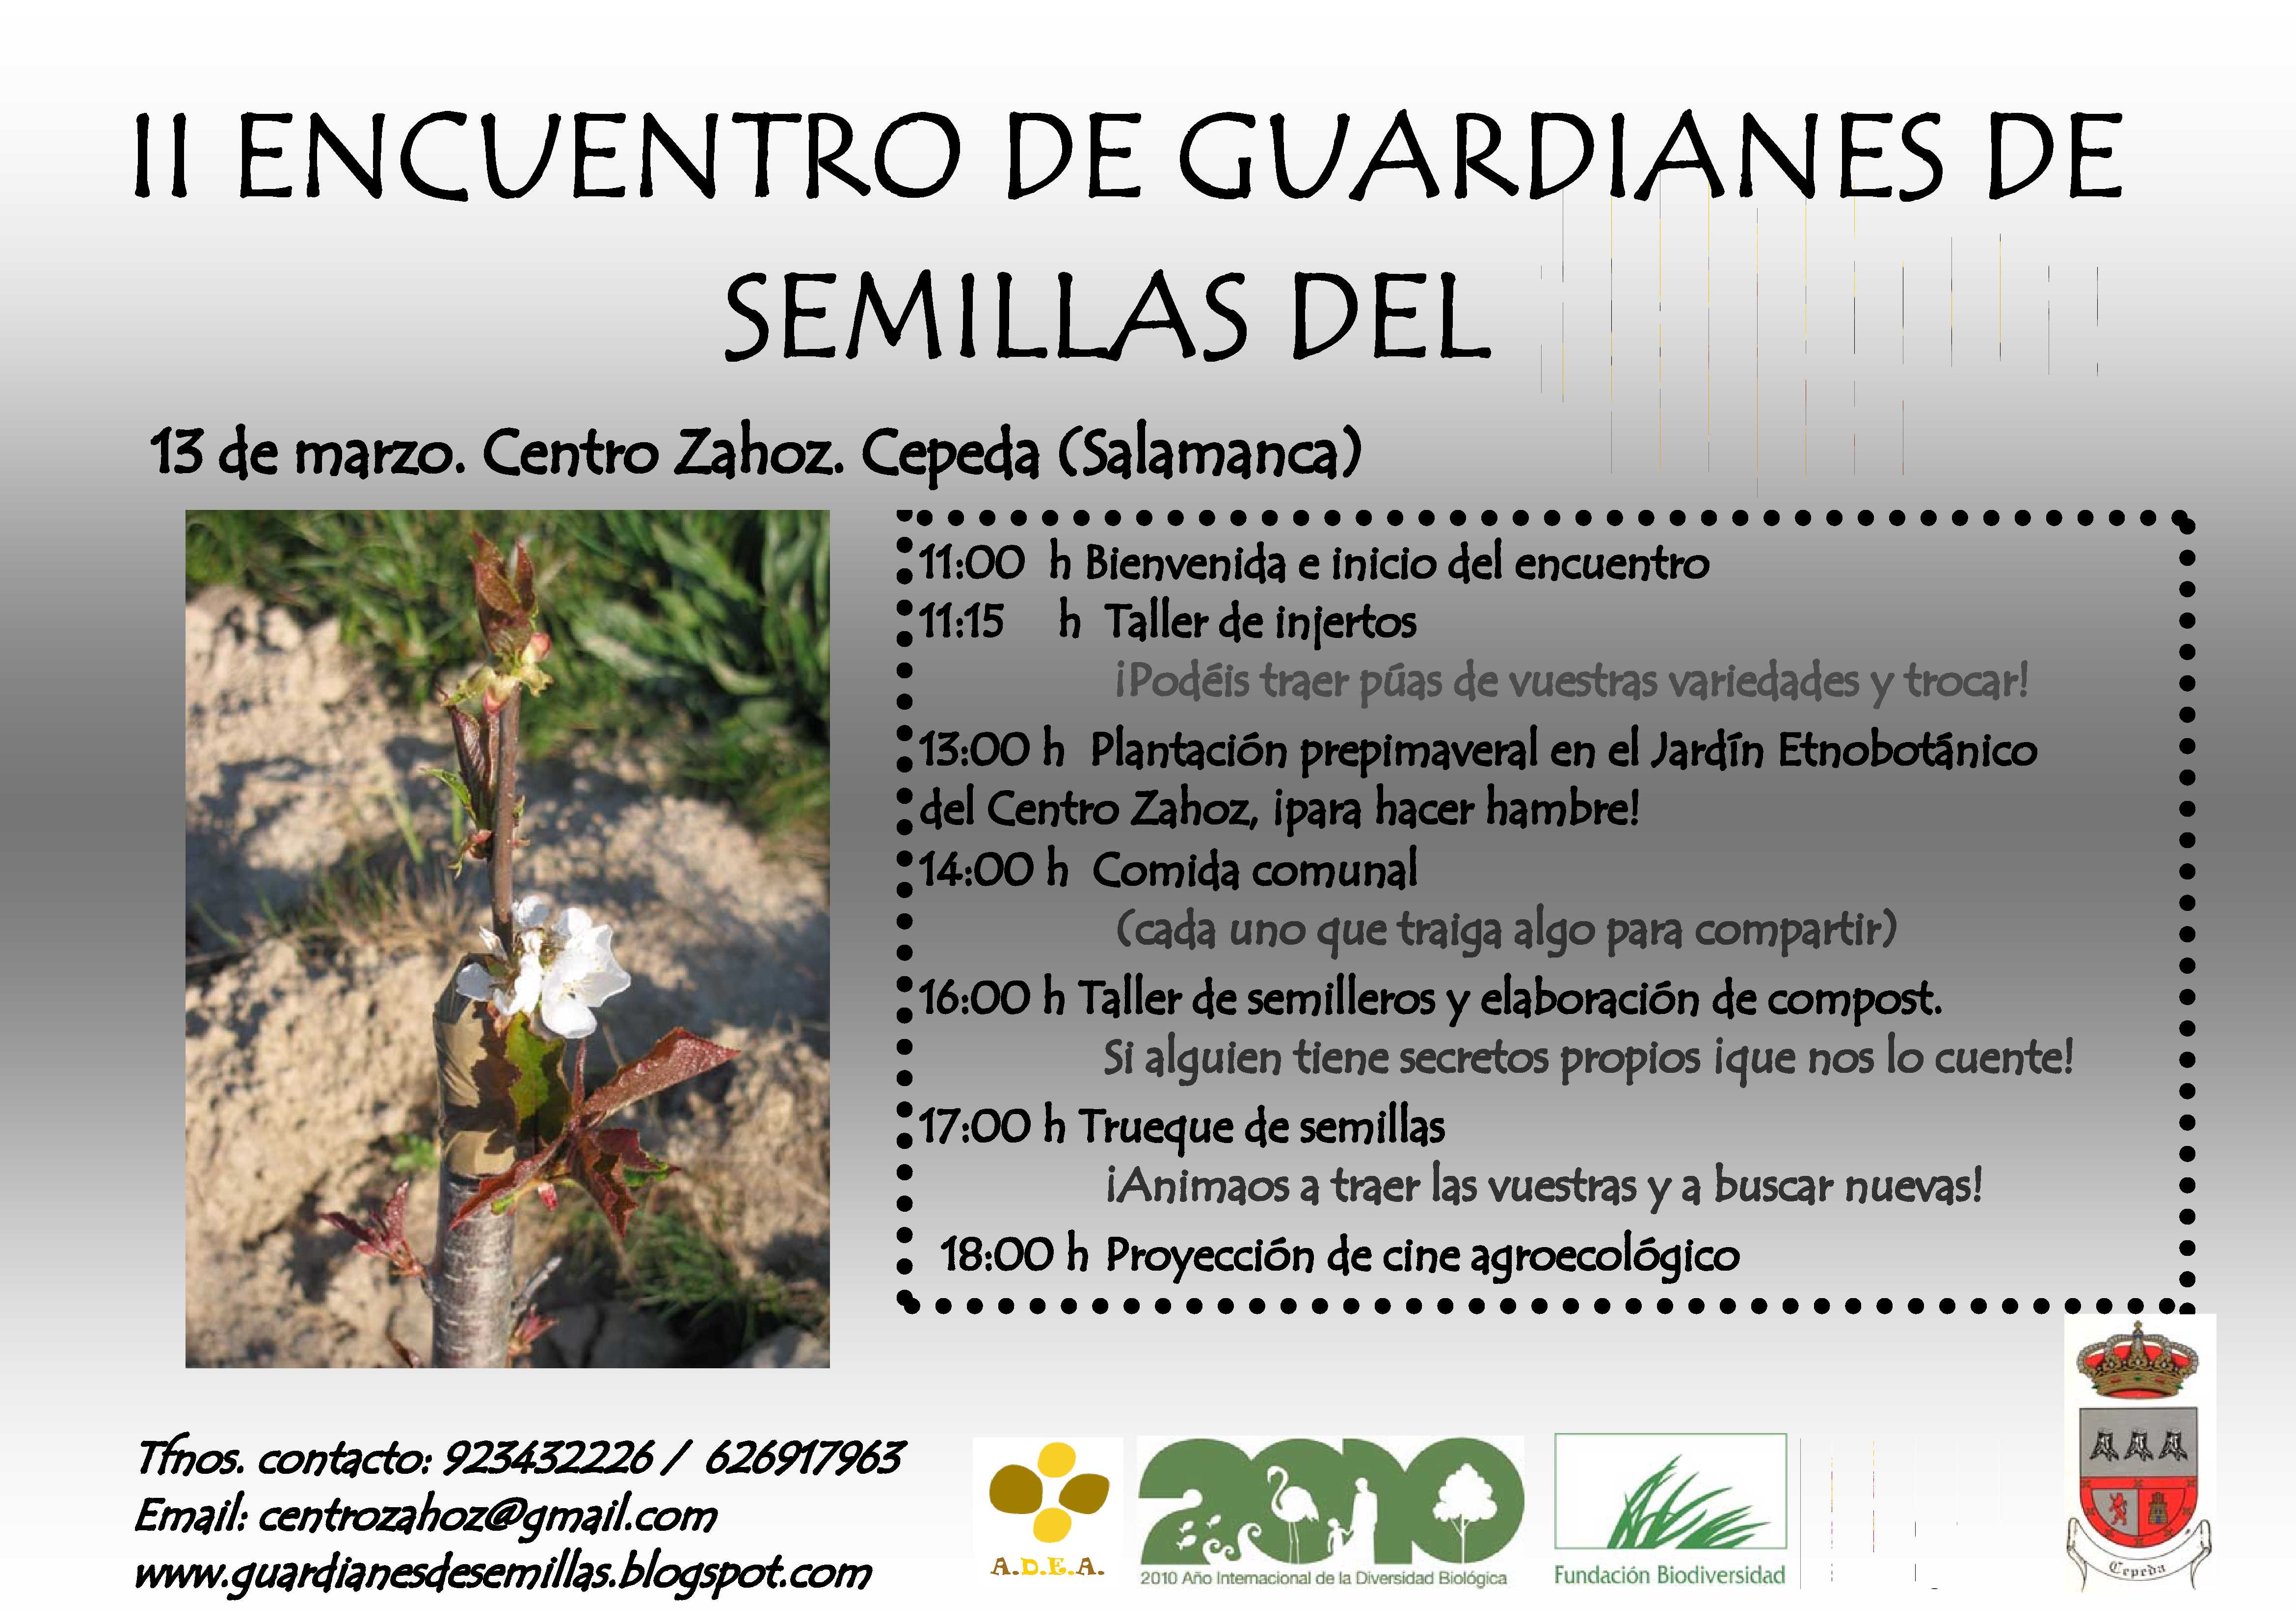 ii-encuentro-guardianes-semillas-13mar10-cz.jpg